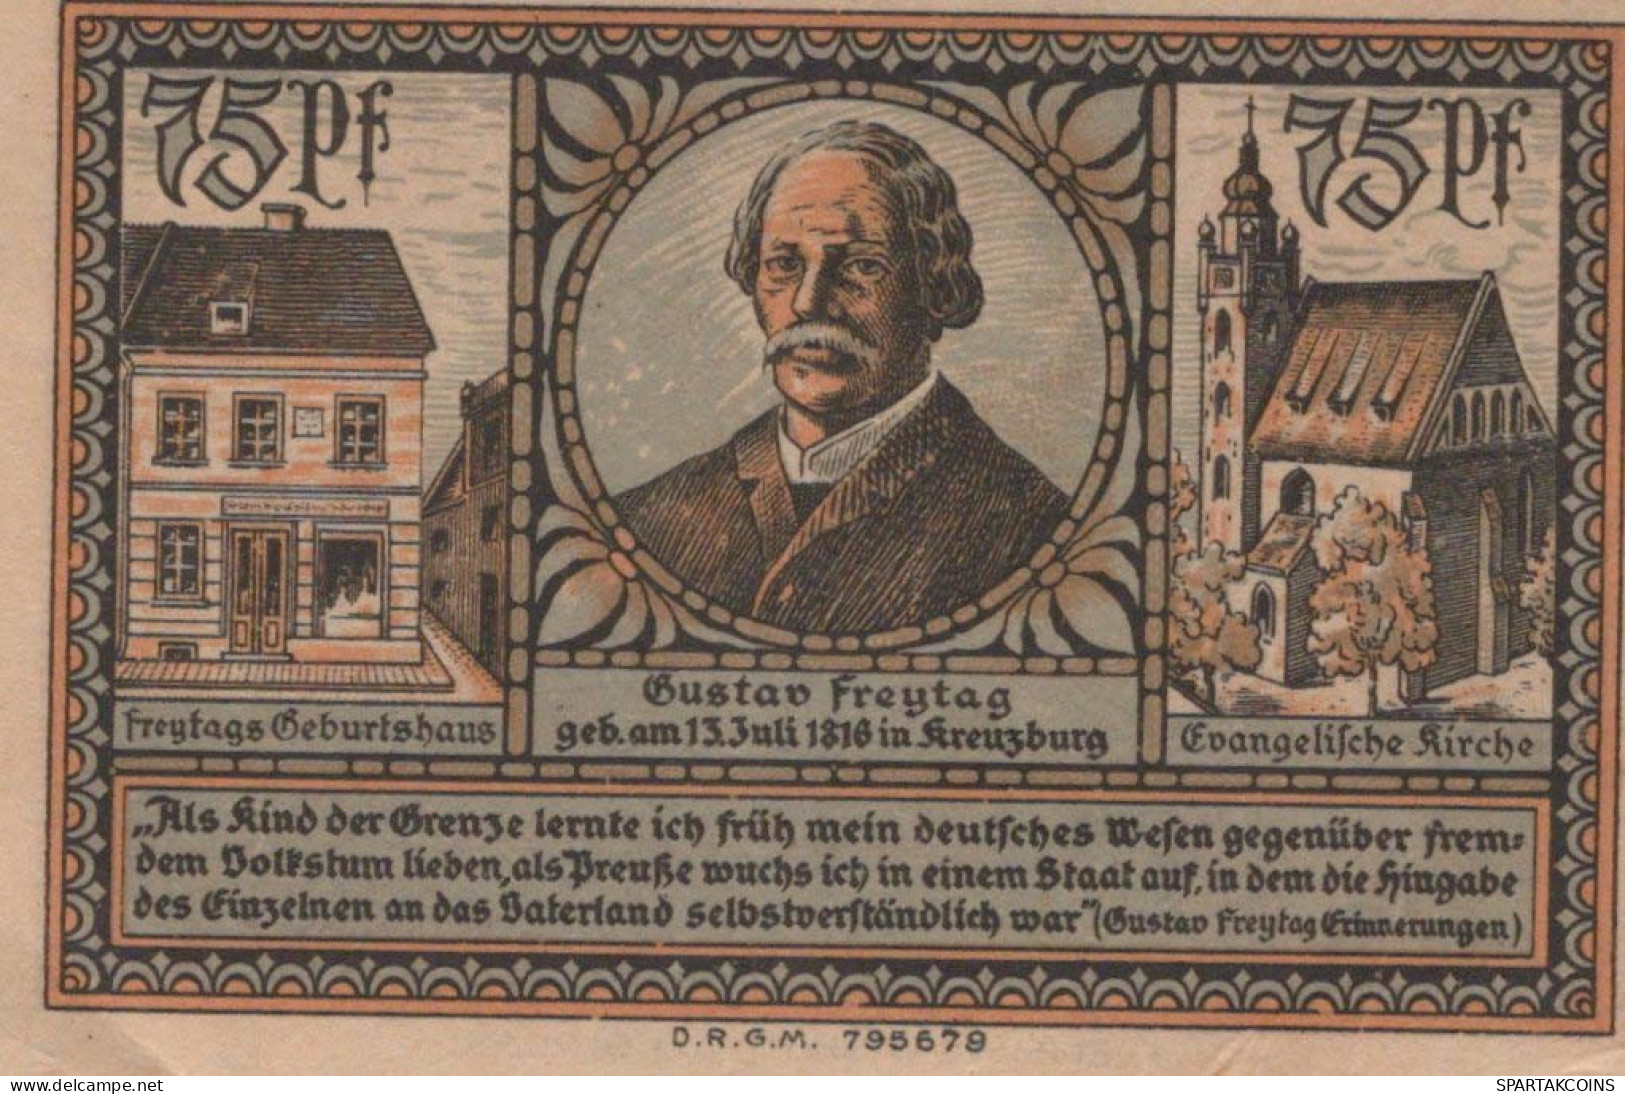 75 PFENNIG 1921 Stadt KREUZBURG Oberen Silesia UNC DEUTSCHLAND Notgeld #PH681 - [11] Local Banknote Issues